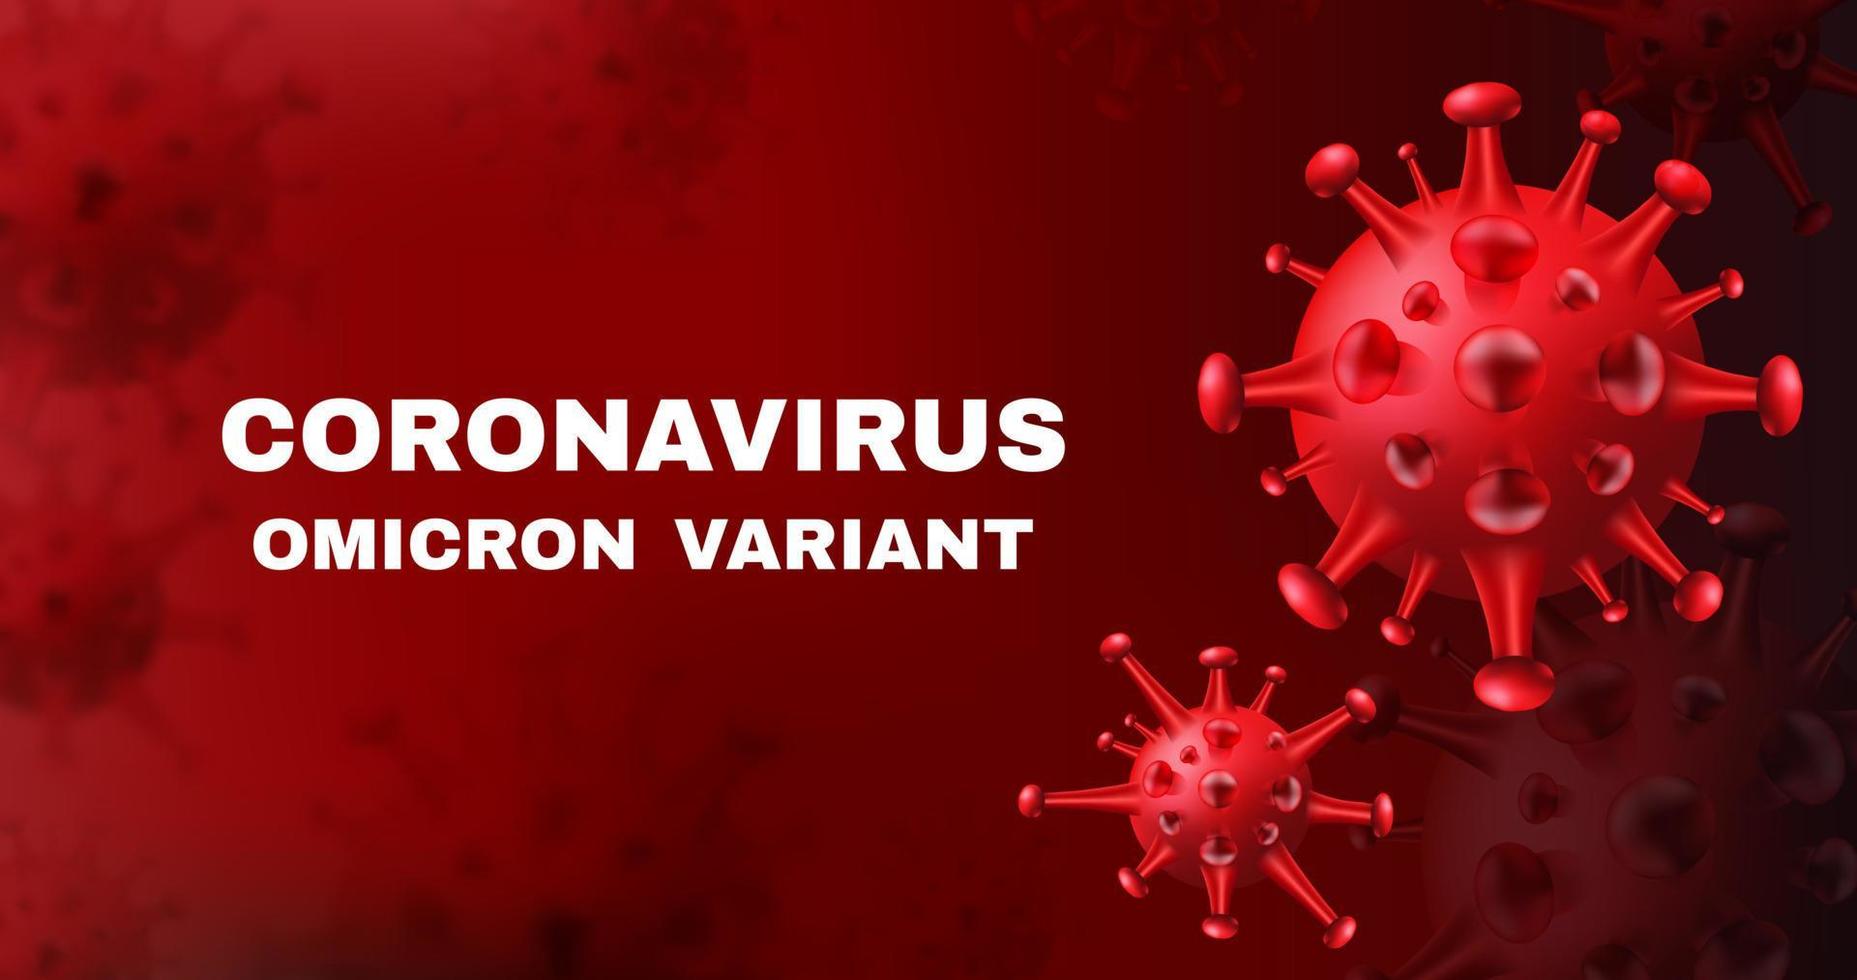 neue Coronavirus-Variante - omicron. Covid-10-Vektorhintergrund mit realistischen Viruszellen. vektor